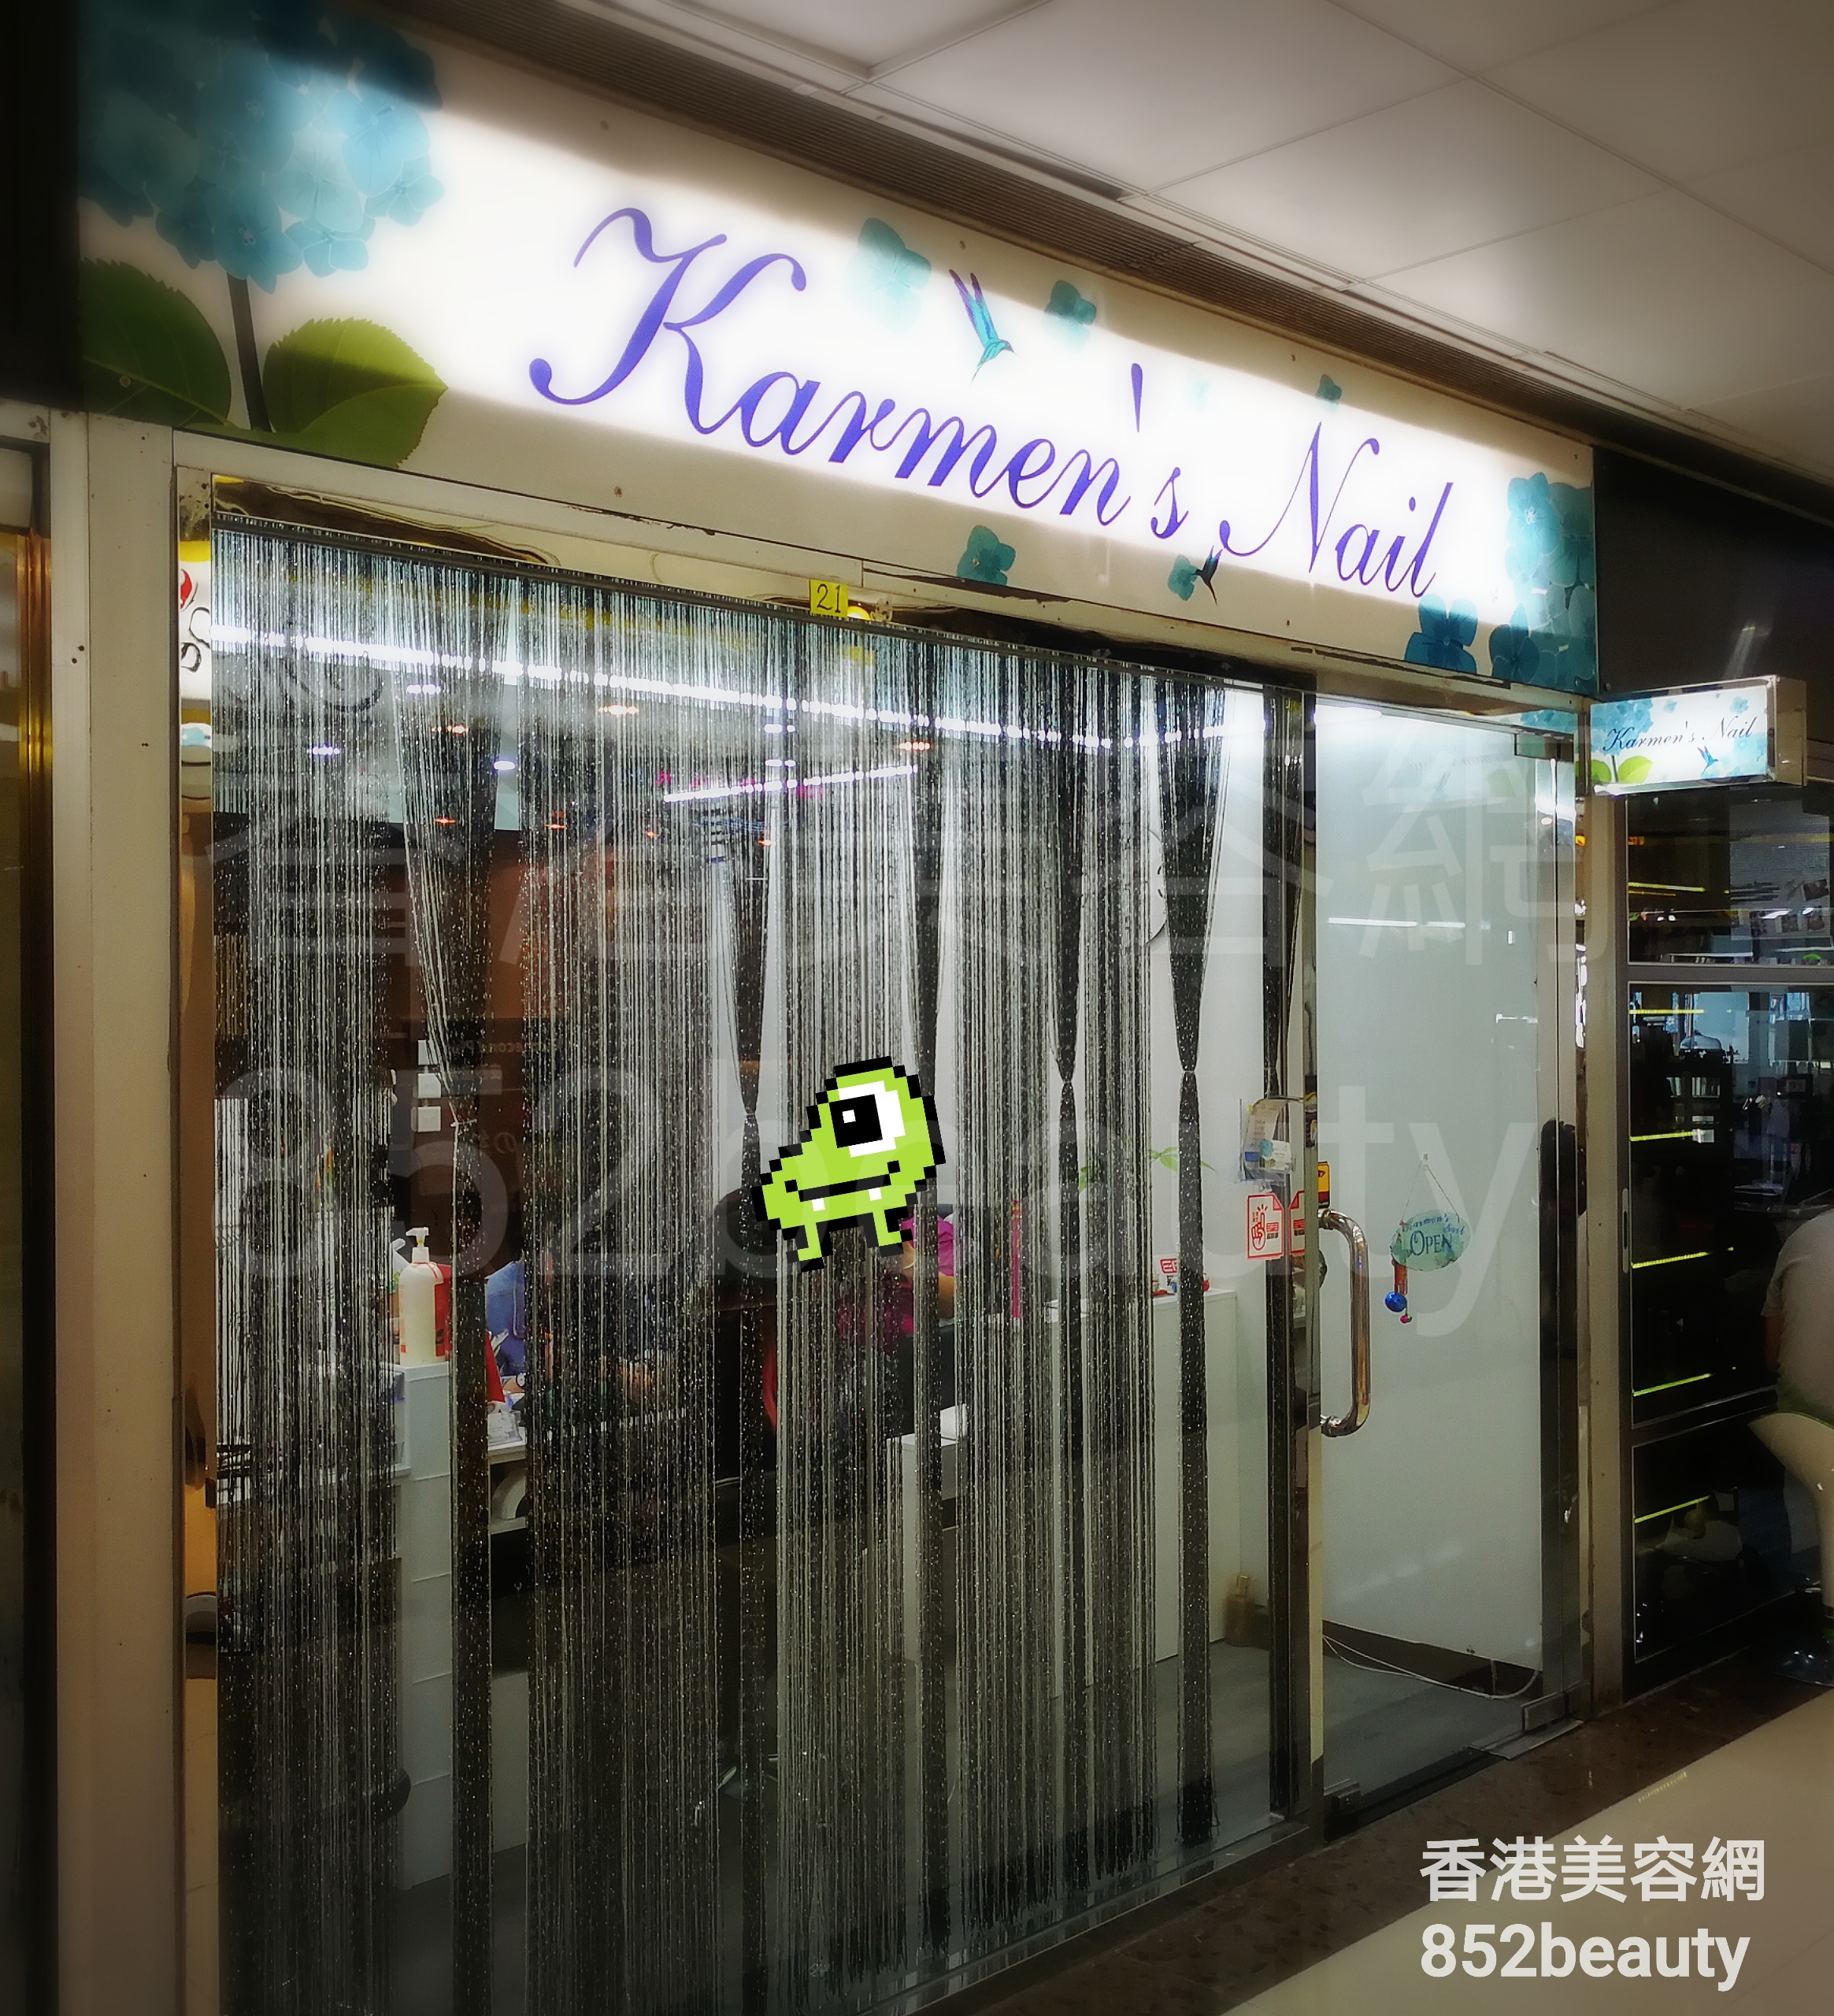 香港美容網 Hong Kong Beauty Salon 美容院 / 美容師: Karmen's Nail